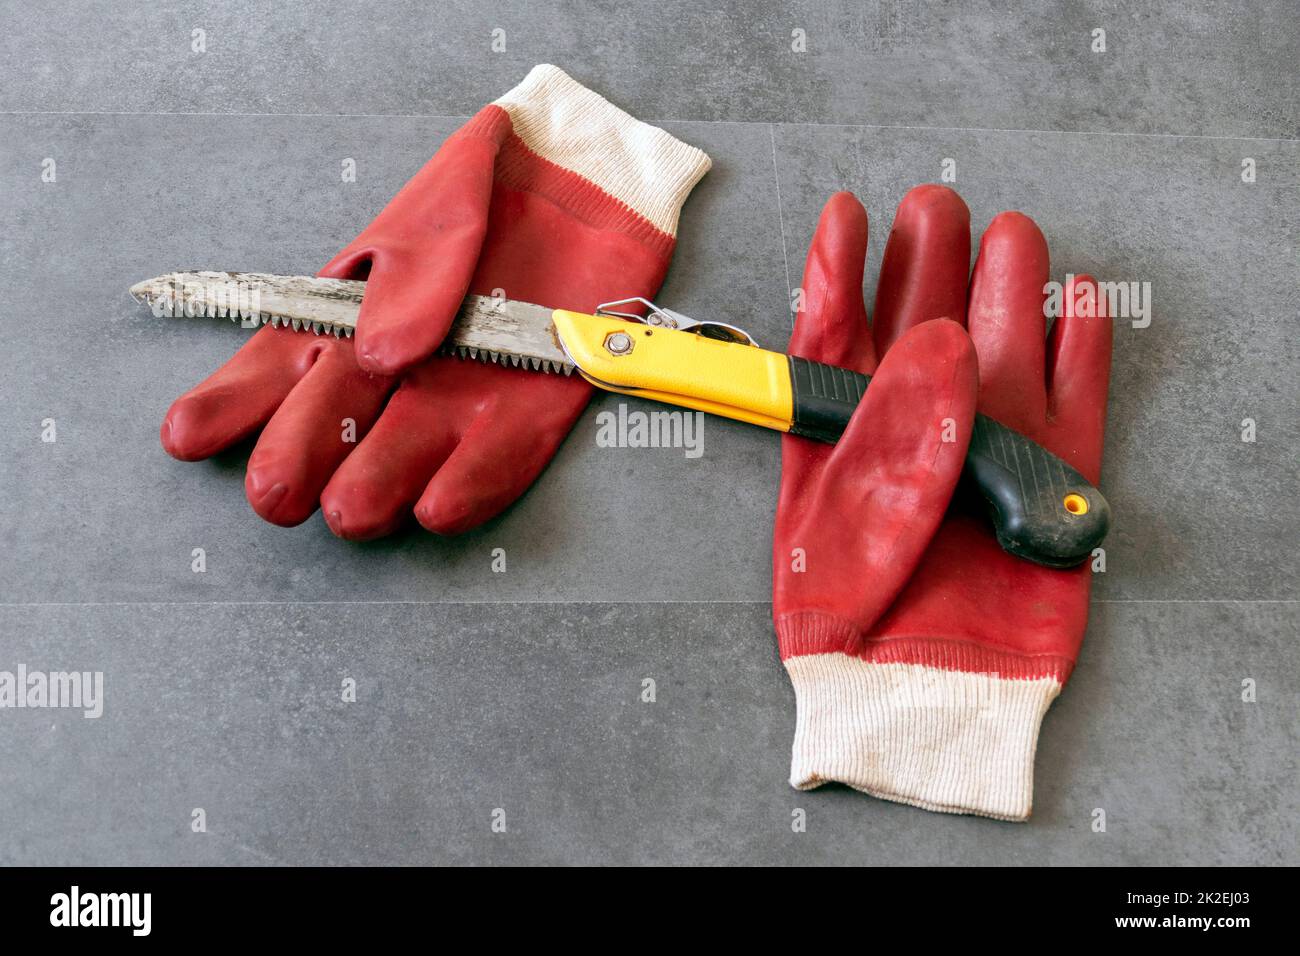 per la sicurezza sul lavoro, è necessario lavorare con i guanti, c'è una sega a mano e guanti di plastica spessi su un pavimento Foto Stock